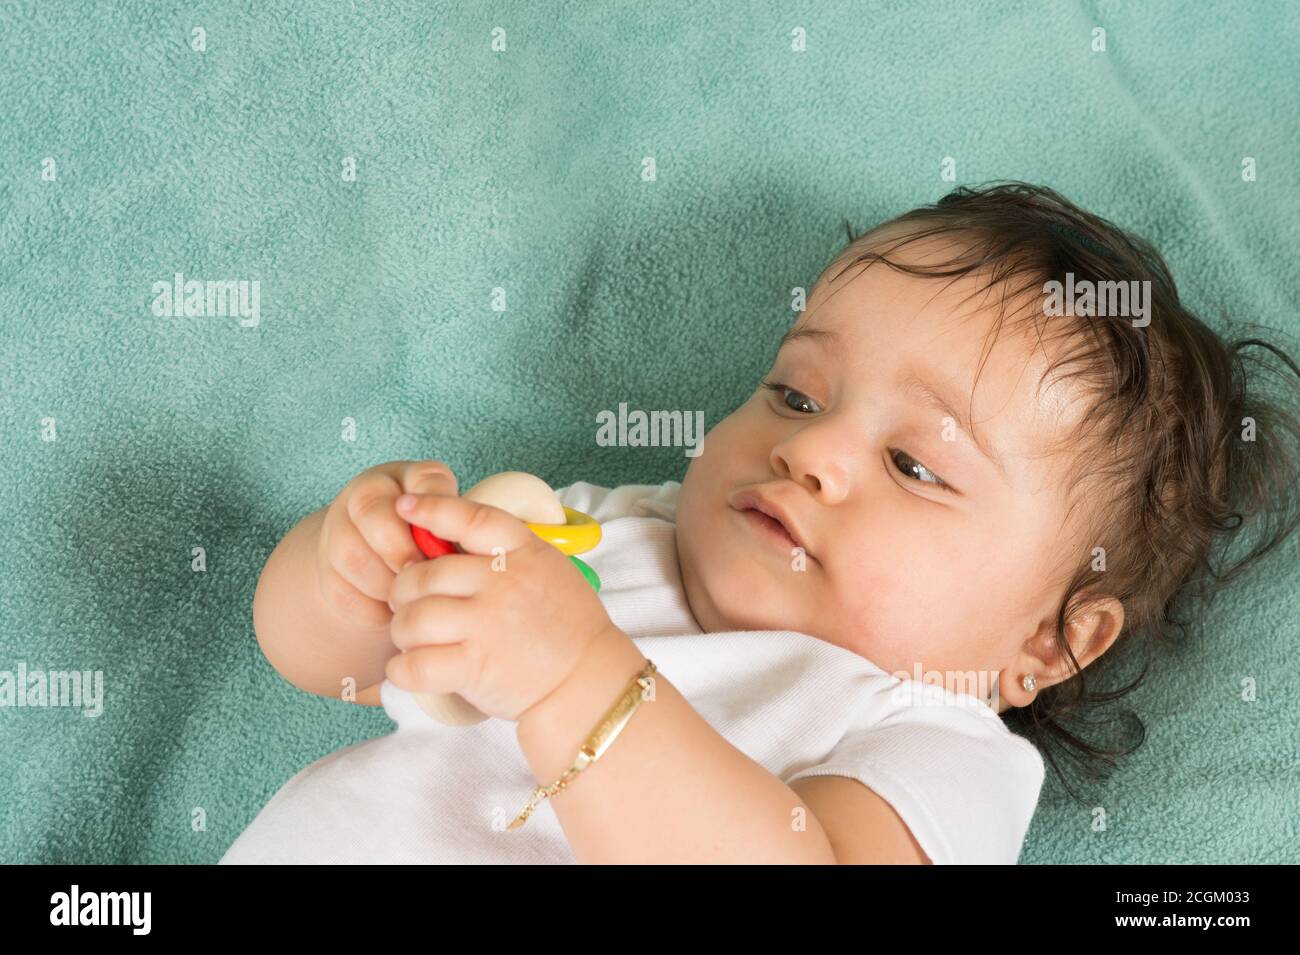 bambina di 6 mesi sulla schiena ravvicinato tenendo ed esaminare il sonaglino del giocattolo che sta tenendo con entrambe le mani Foto Stock